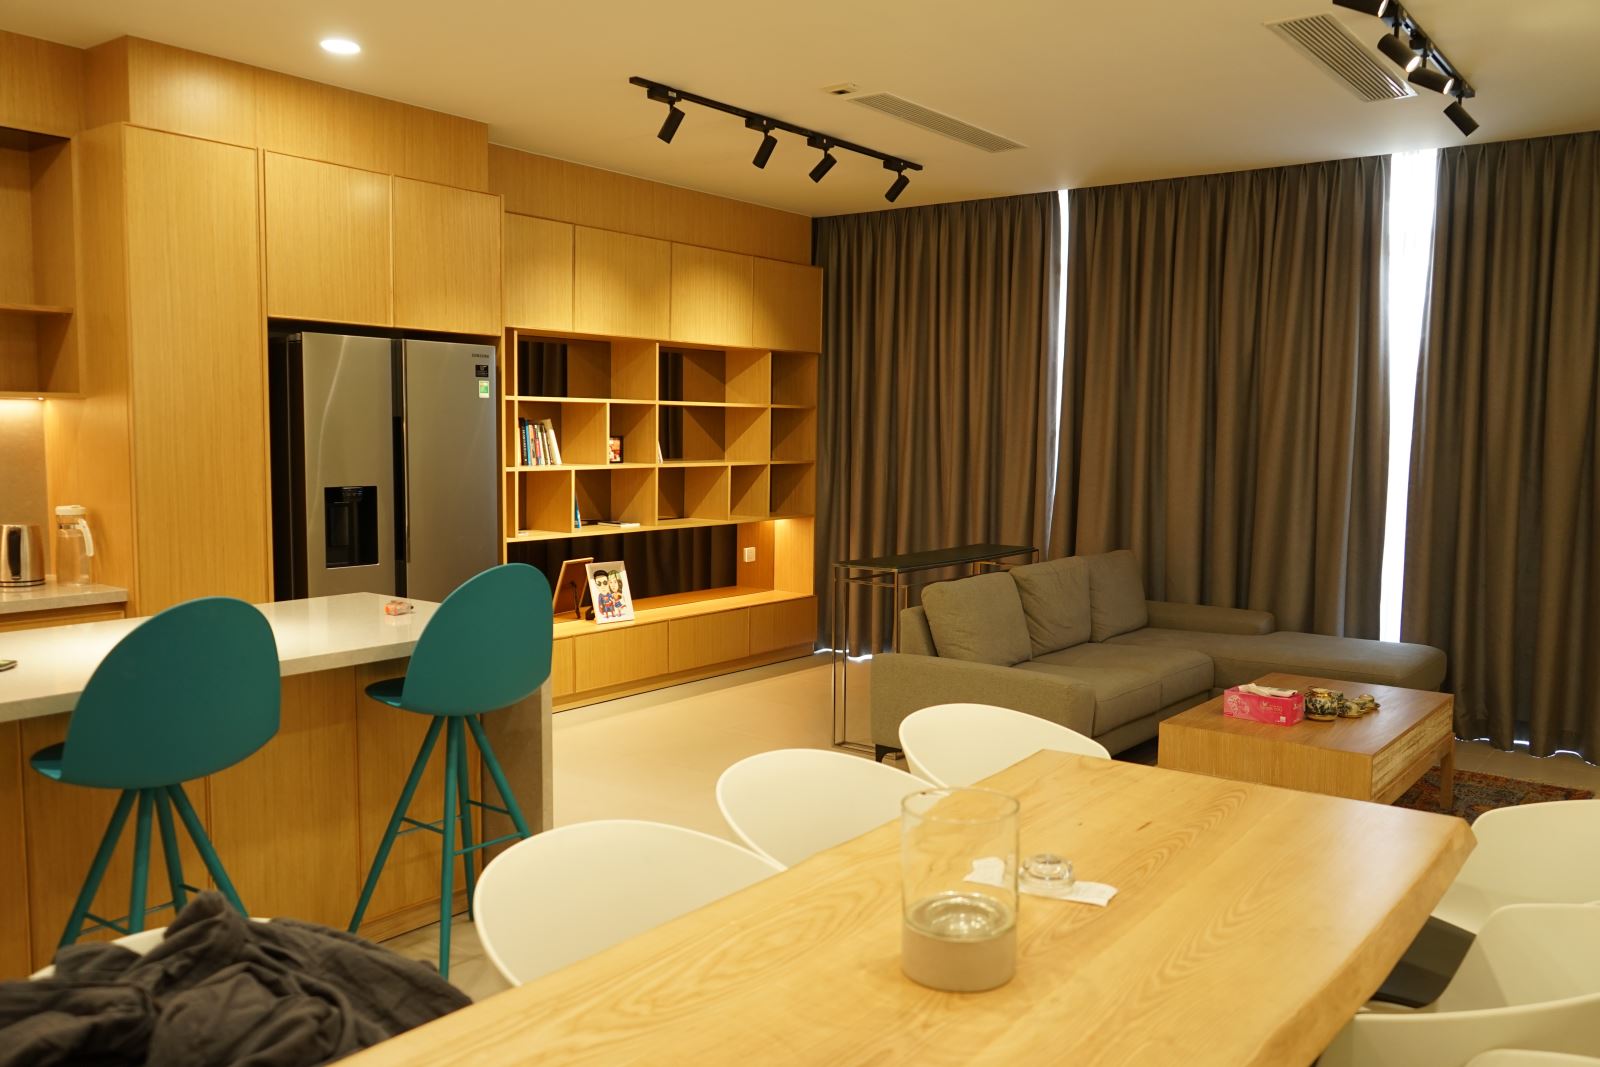 Gợi ý bạn những mẫu thiết kế nội thất phòng khách biệt thự hiện đại